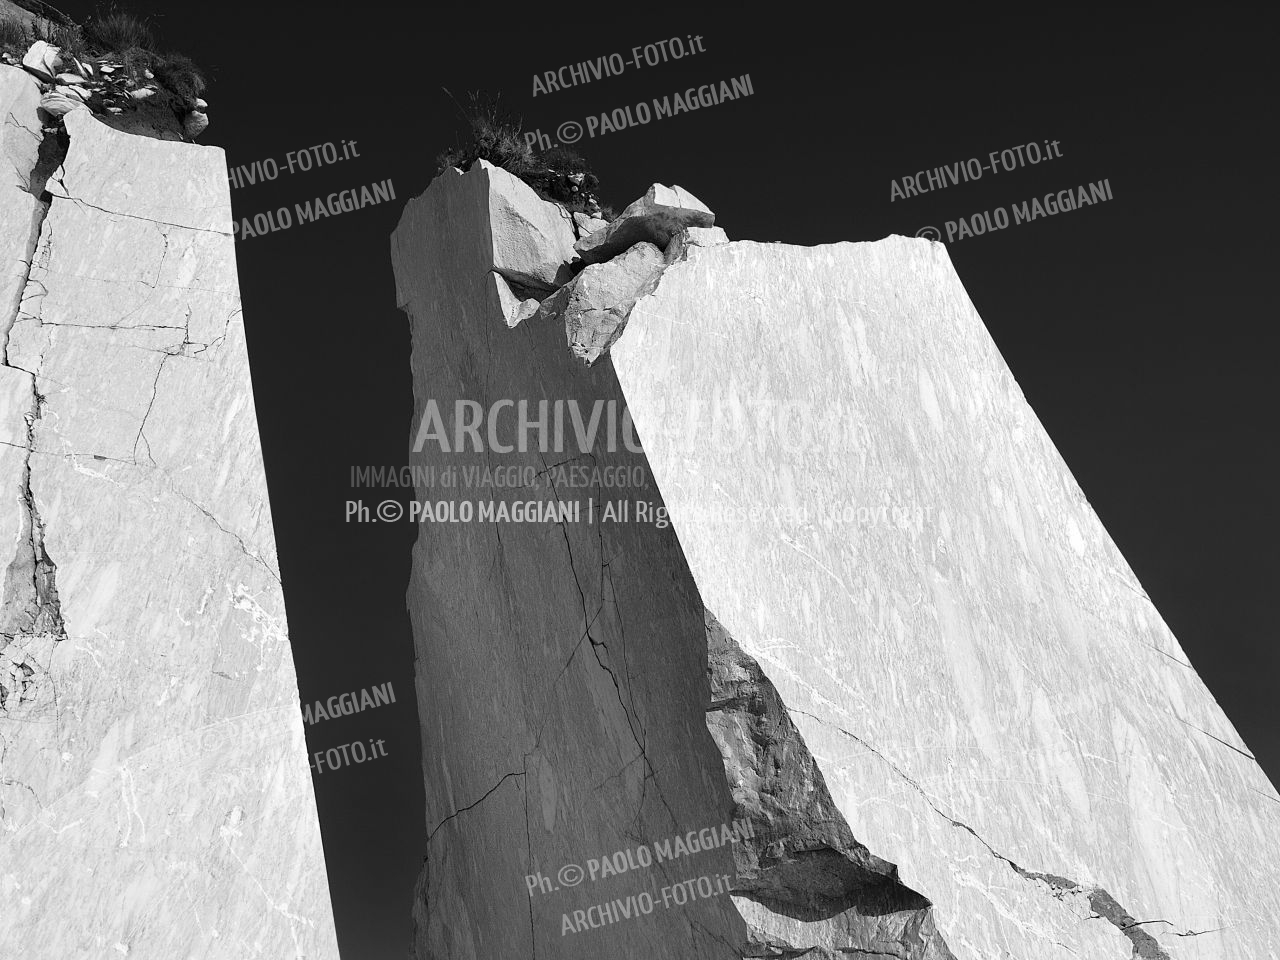 Forme di Marmo si s-Tagliano, cave Altissimo  ©Paolo Maggiani